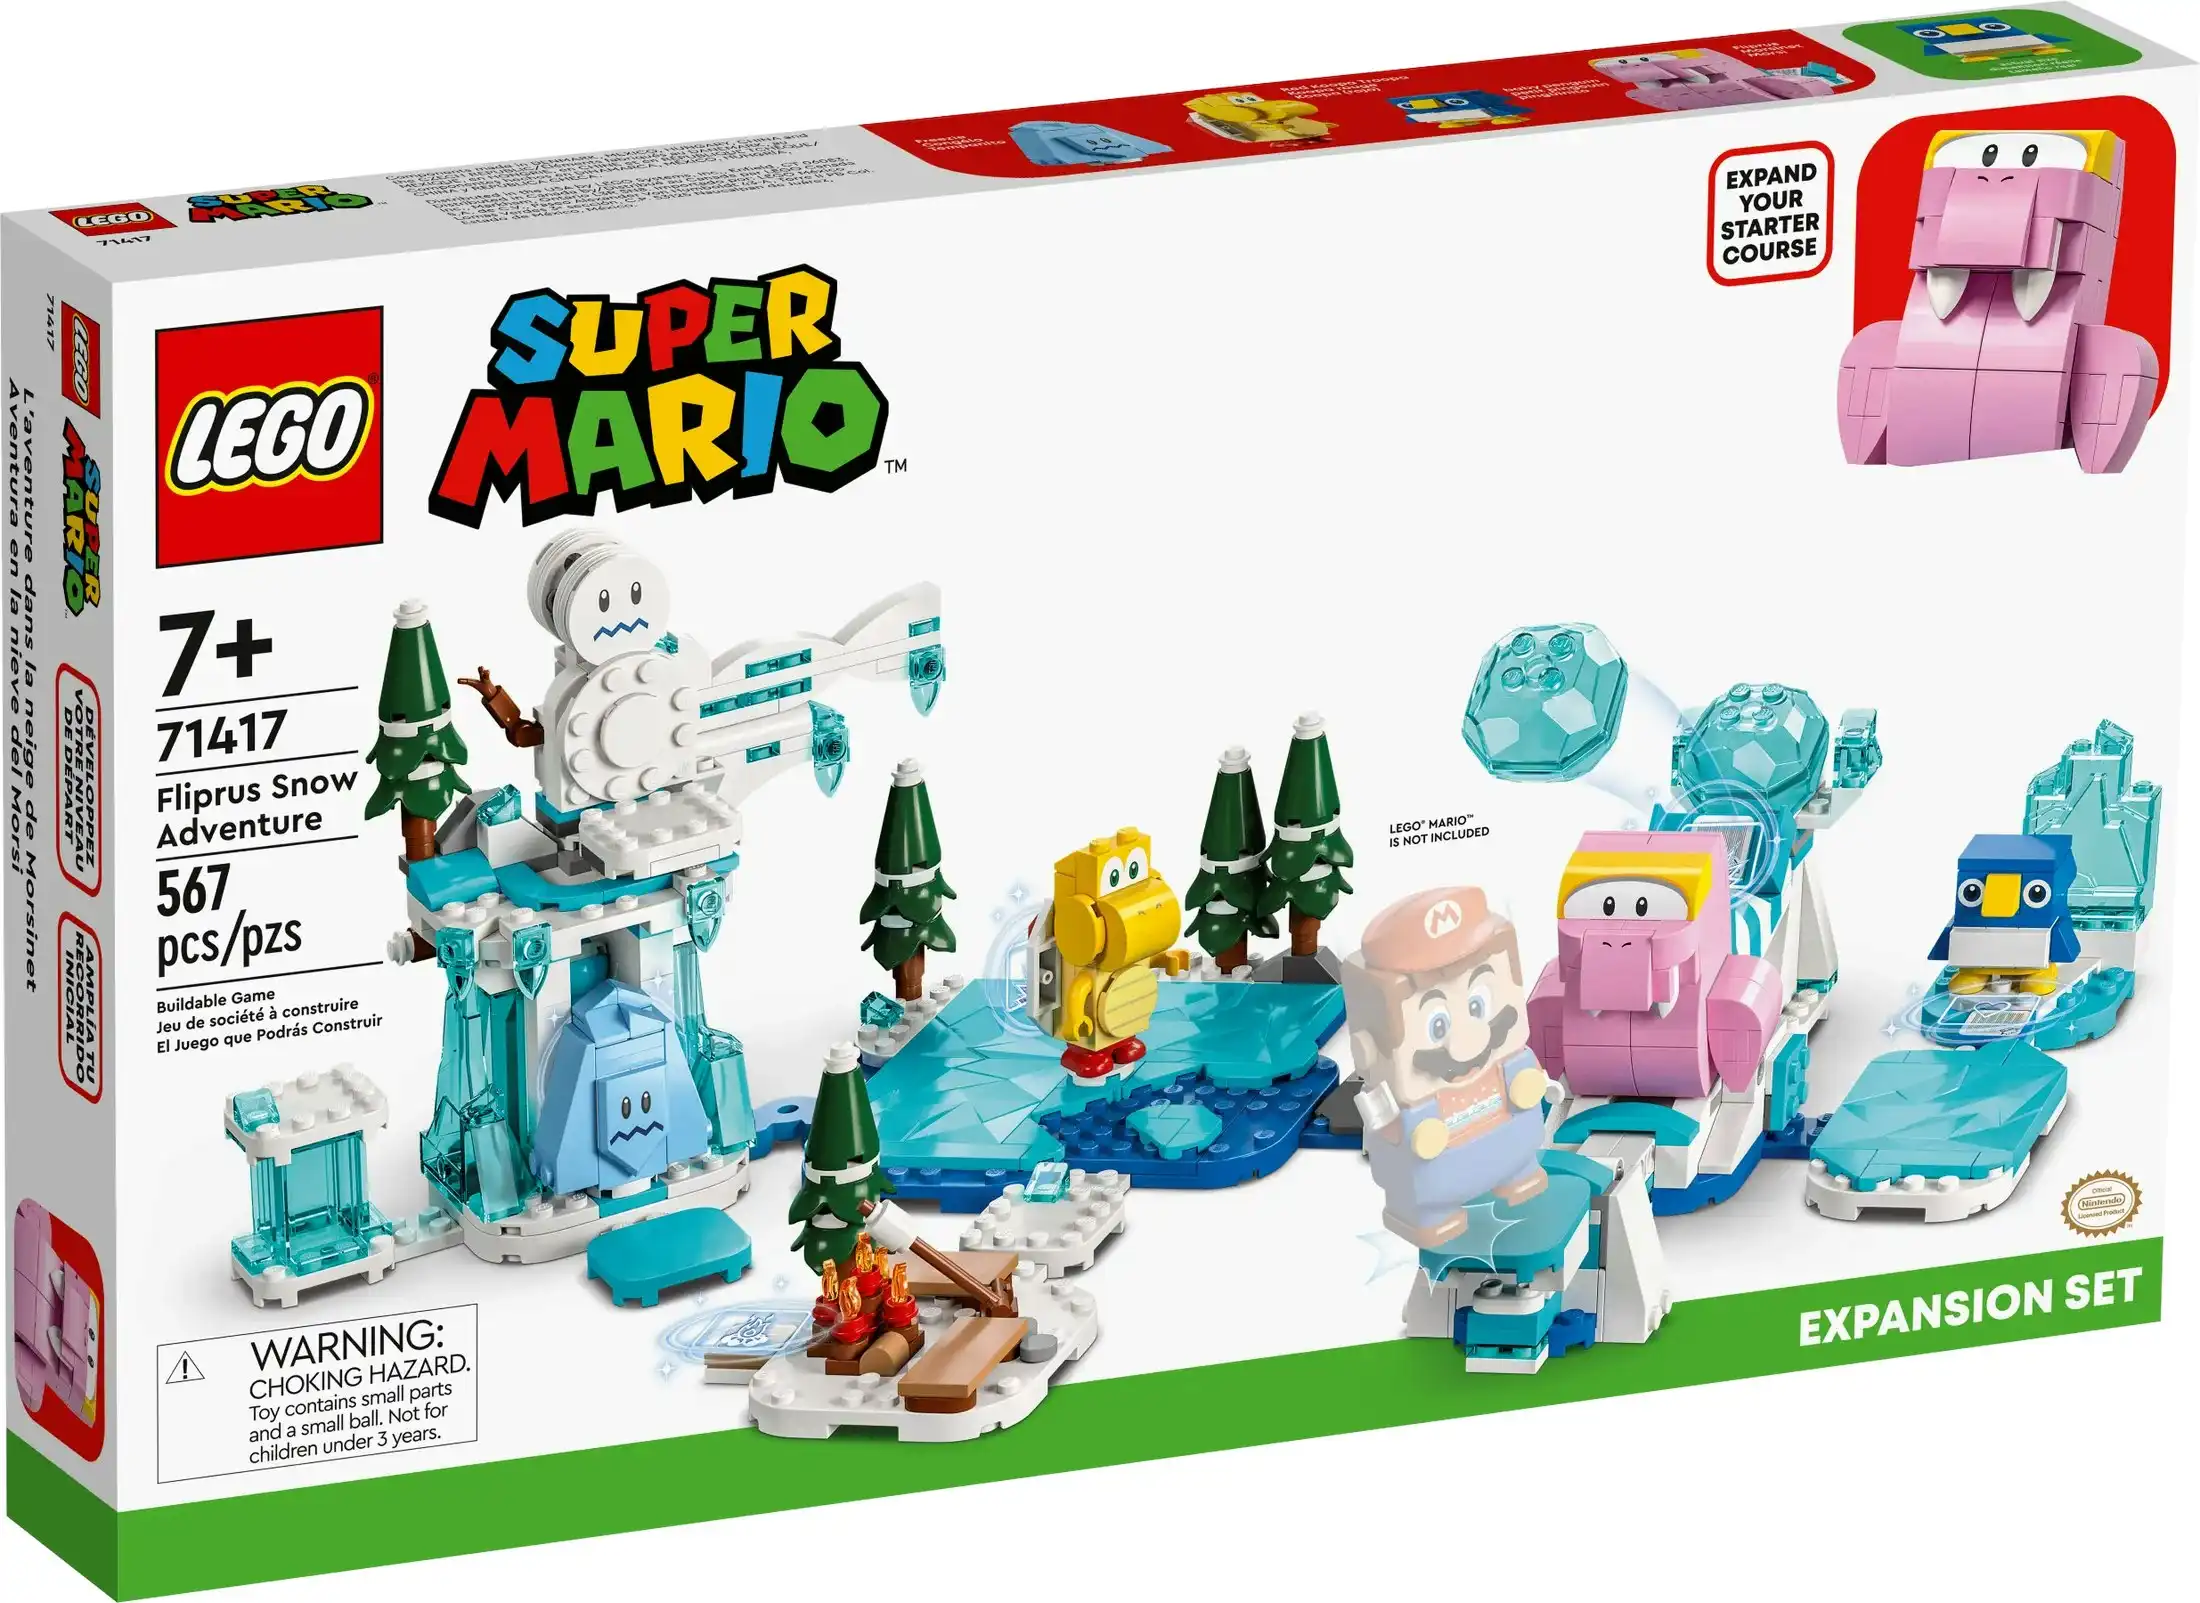 LEGO 71417 Fliprus Snow Adventure Expansion Set - Super Mario